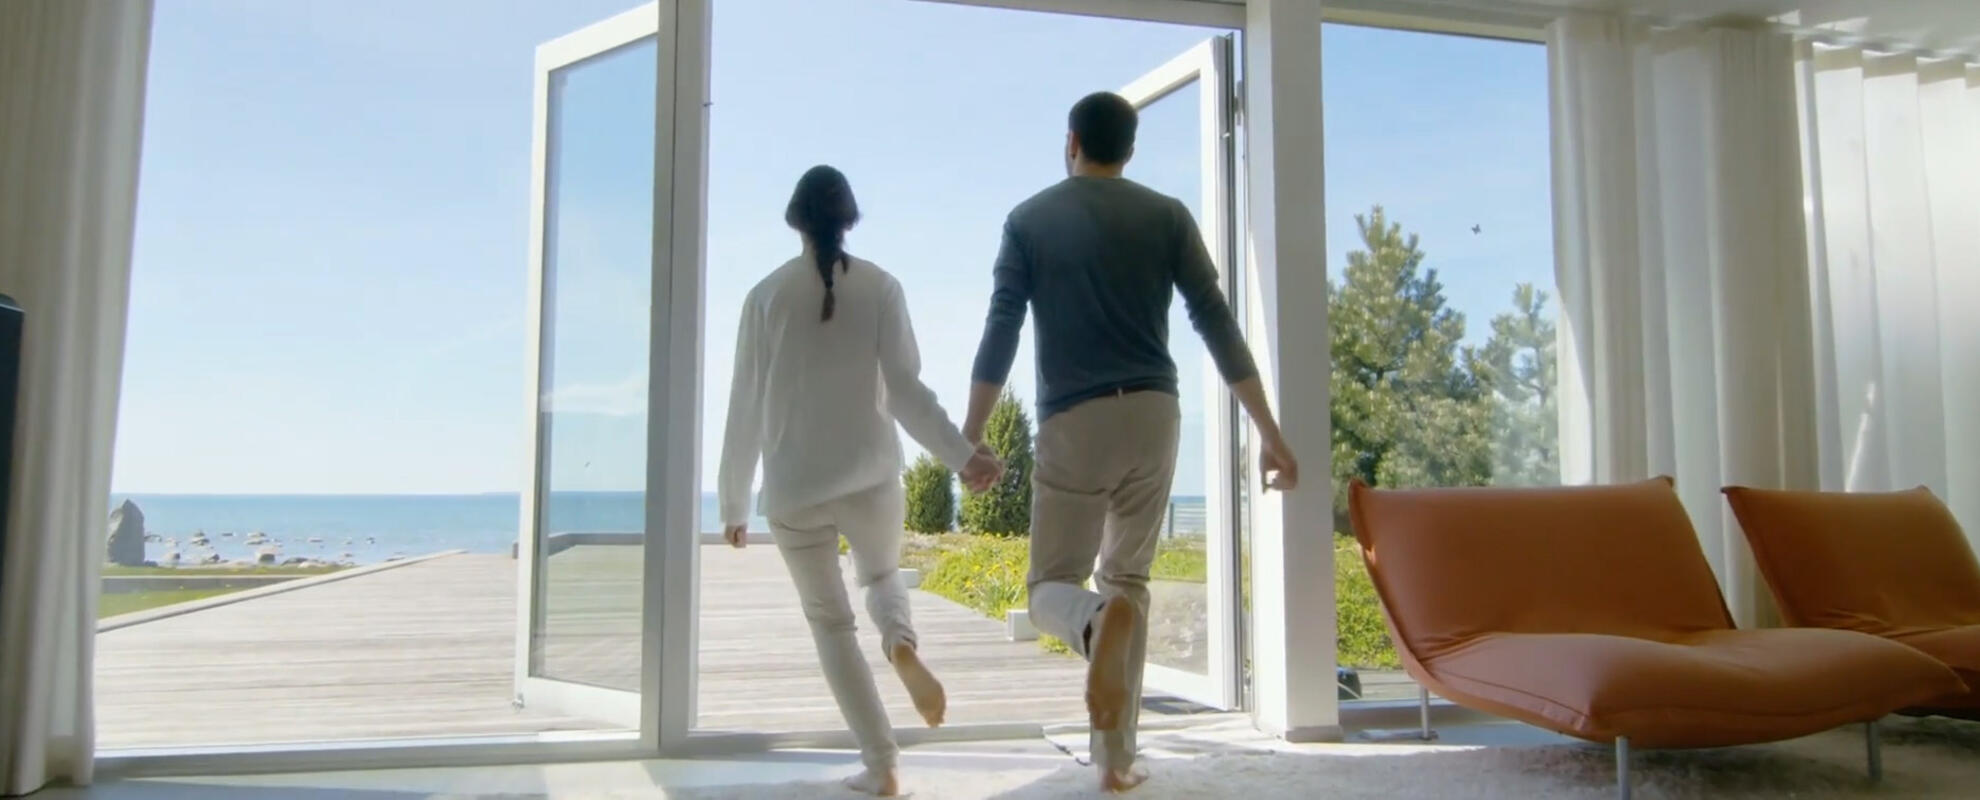 Paar läuft durch offene Terassentür nach draußen.